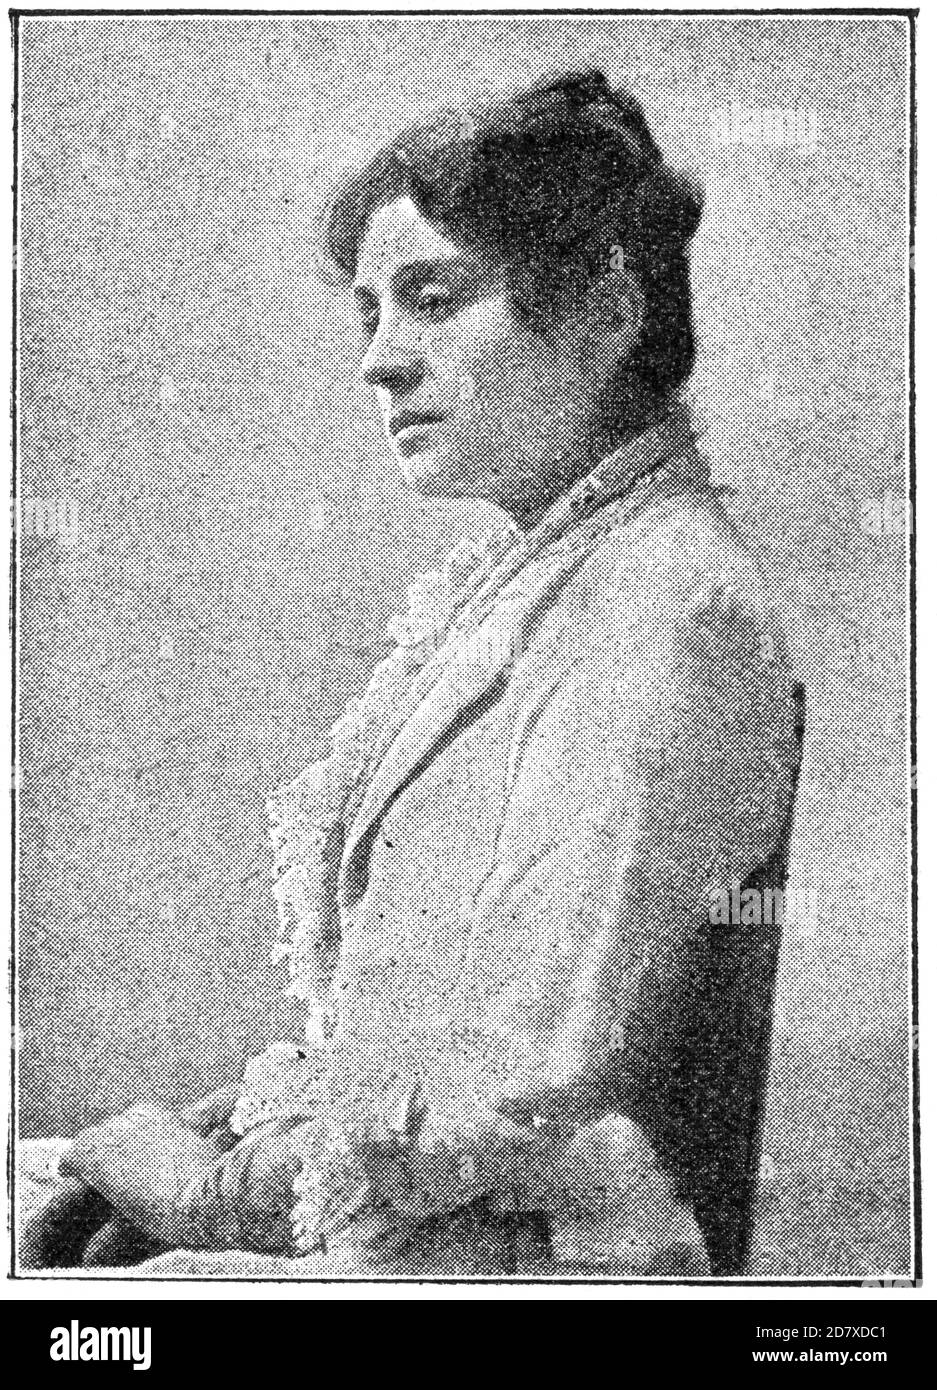 Porträt von Eleonora Duse - eine italienische Schauspielerin. Illustration des 19. Jahrhunderts. Weißer Hintergrund. Stockfoto